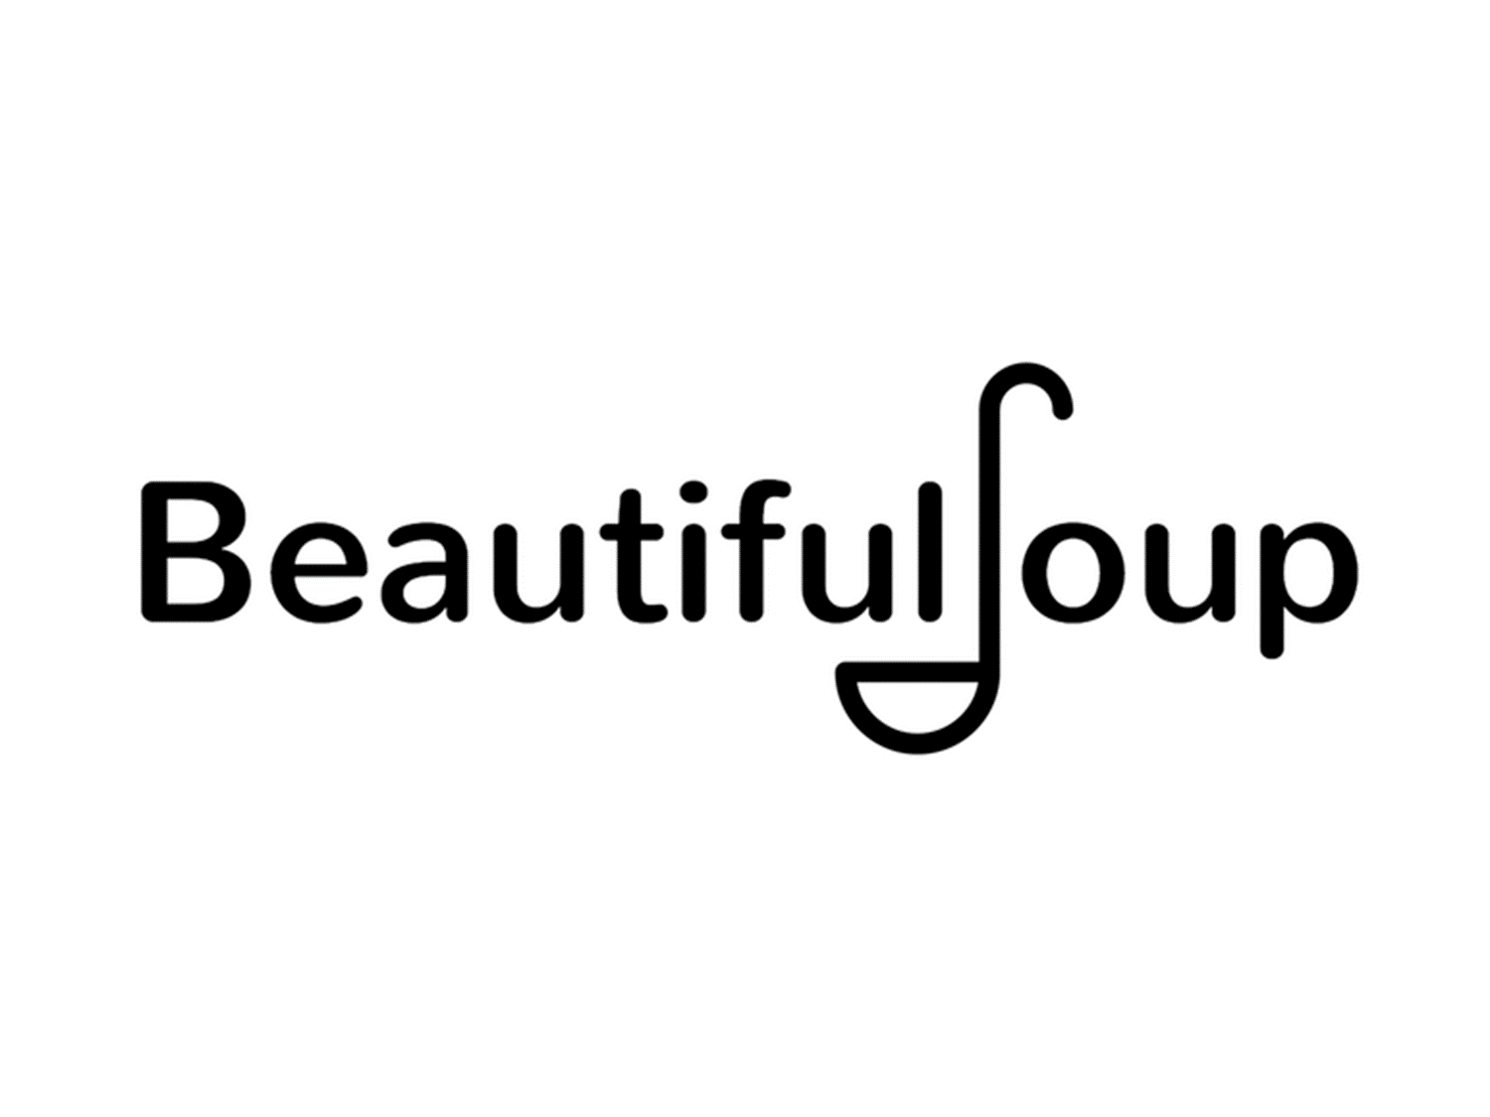 beautifulsoup_logo